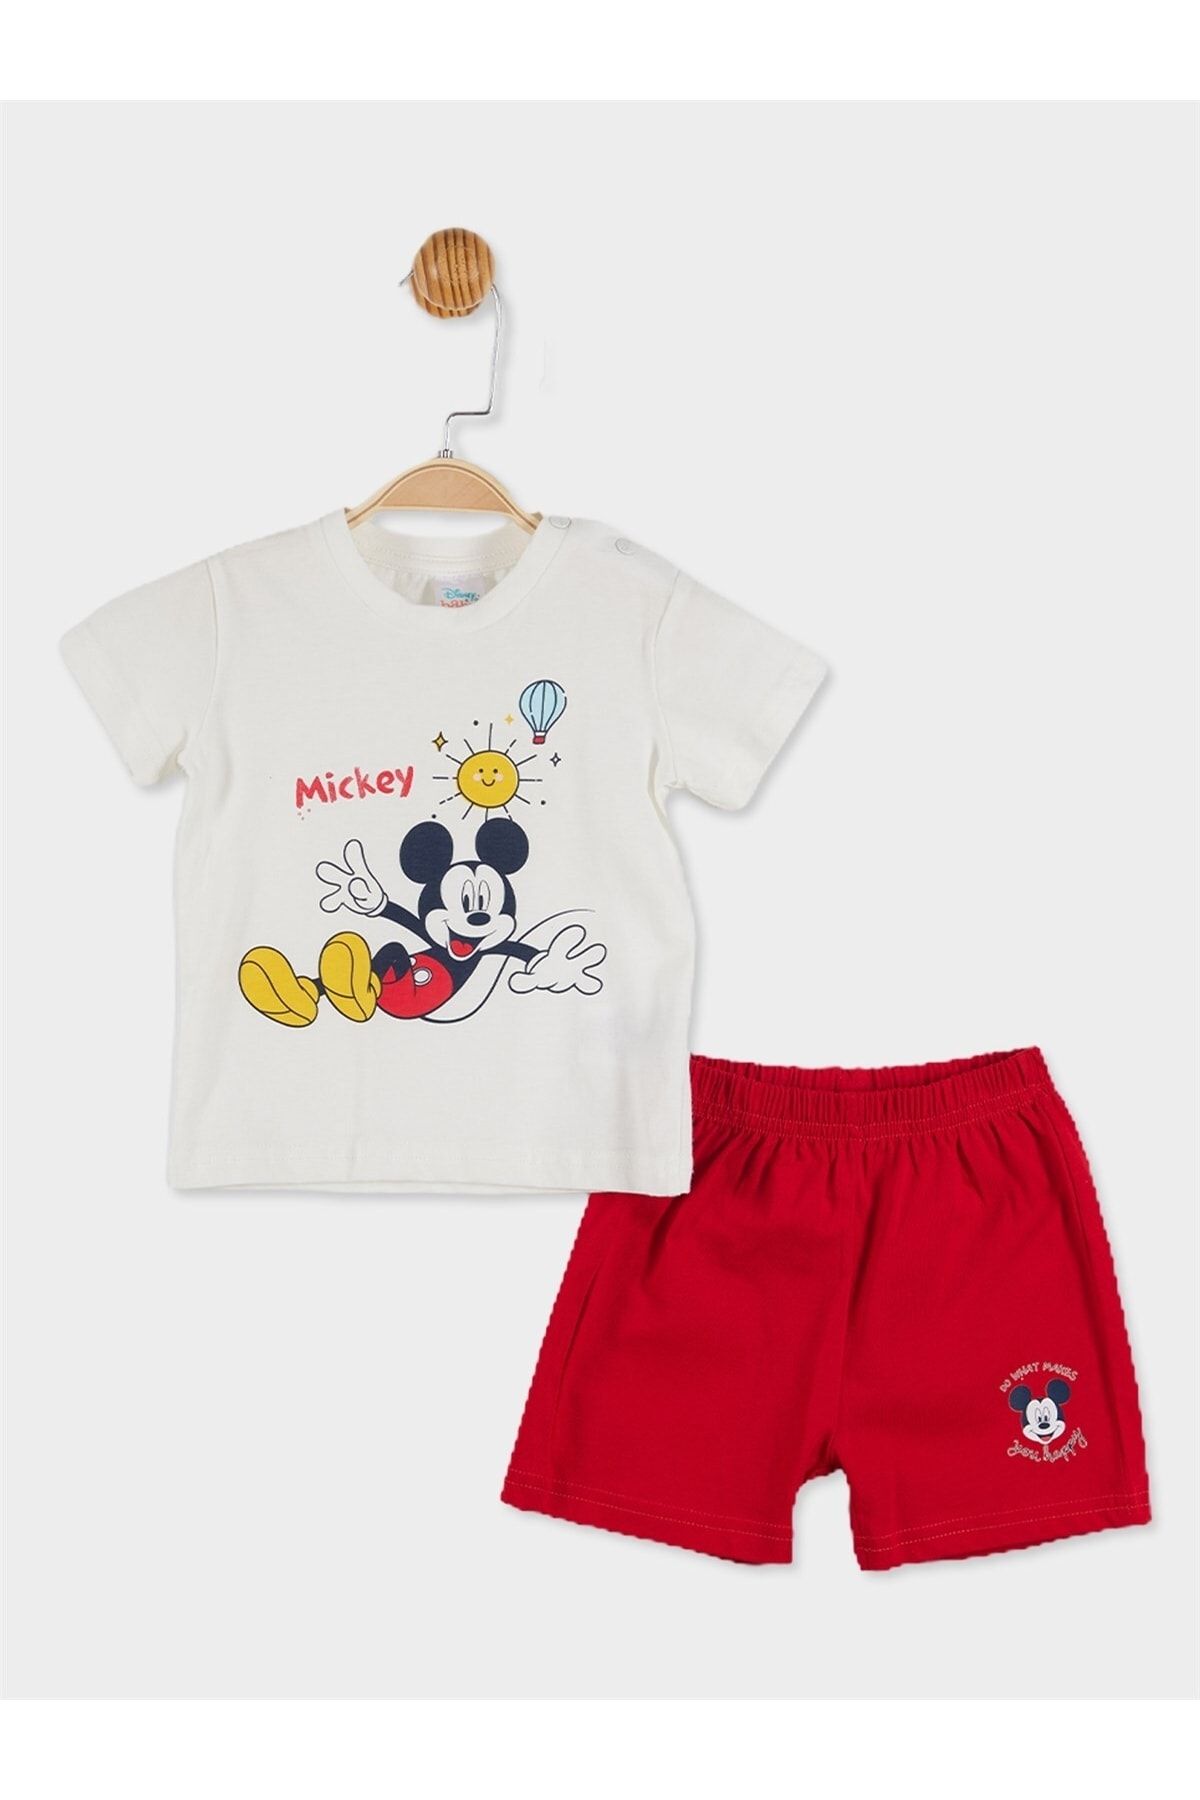 Mickey Mouse Disney Lisanslı Erkek Bebek Tişört Ve Şortlu Pijama Takımı 20843